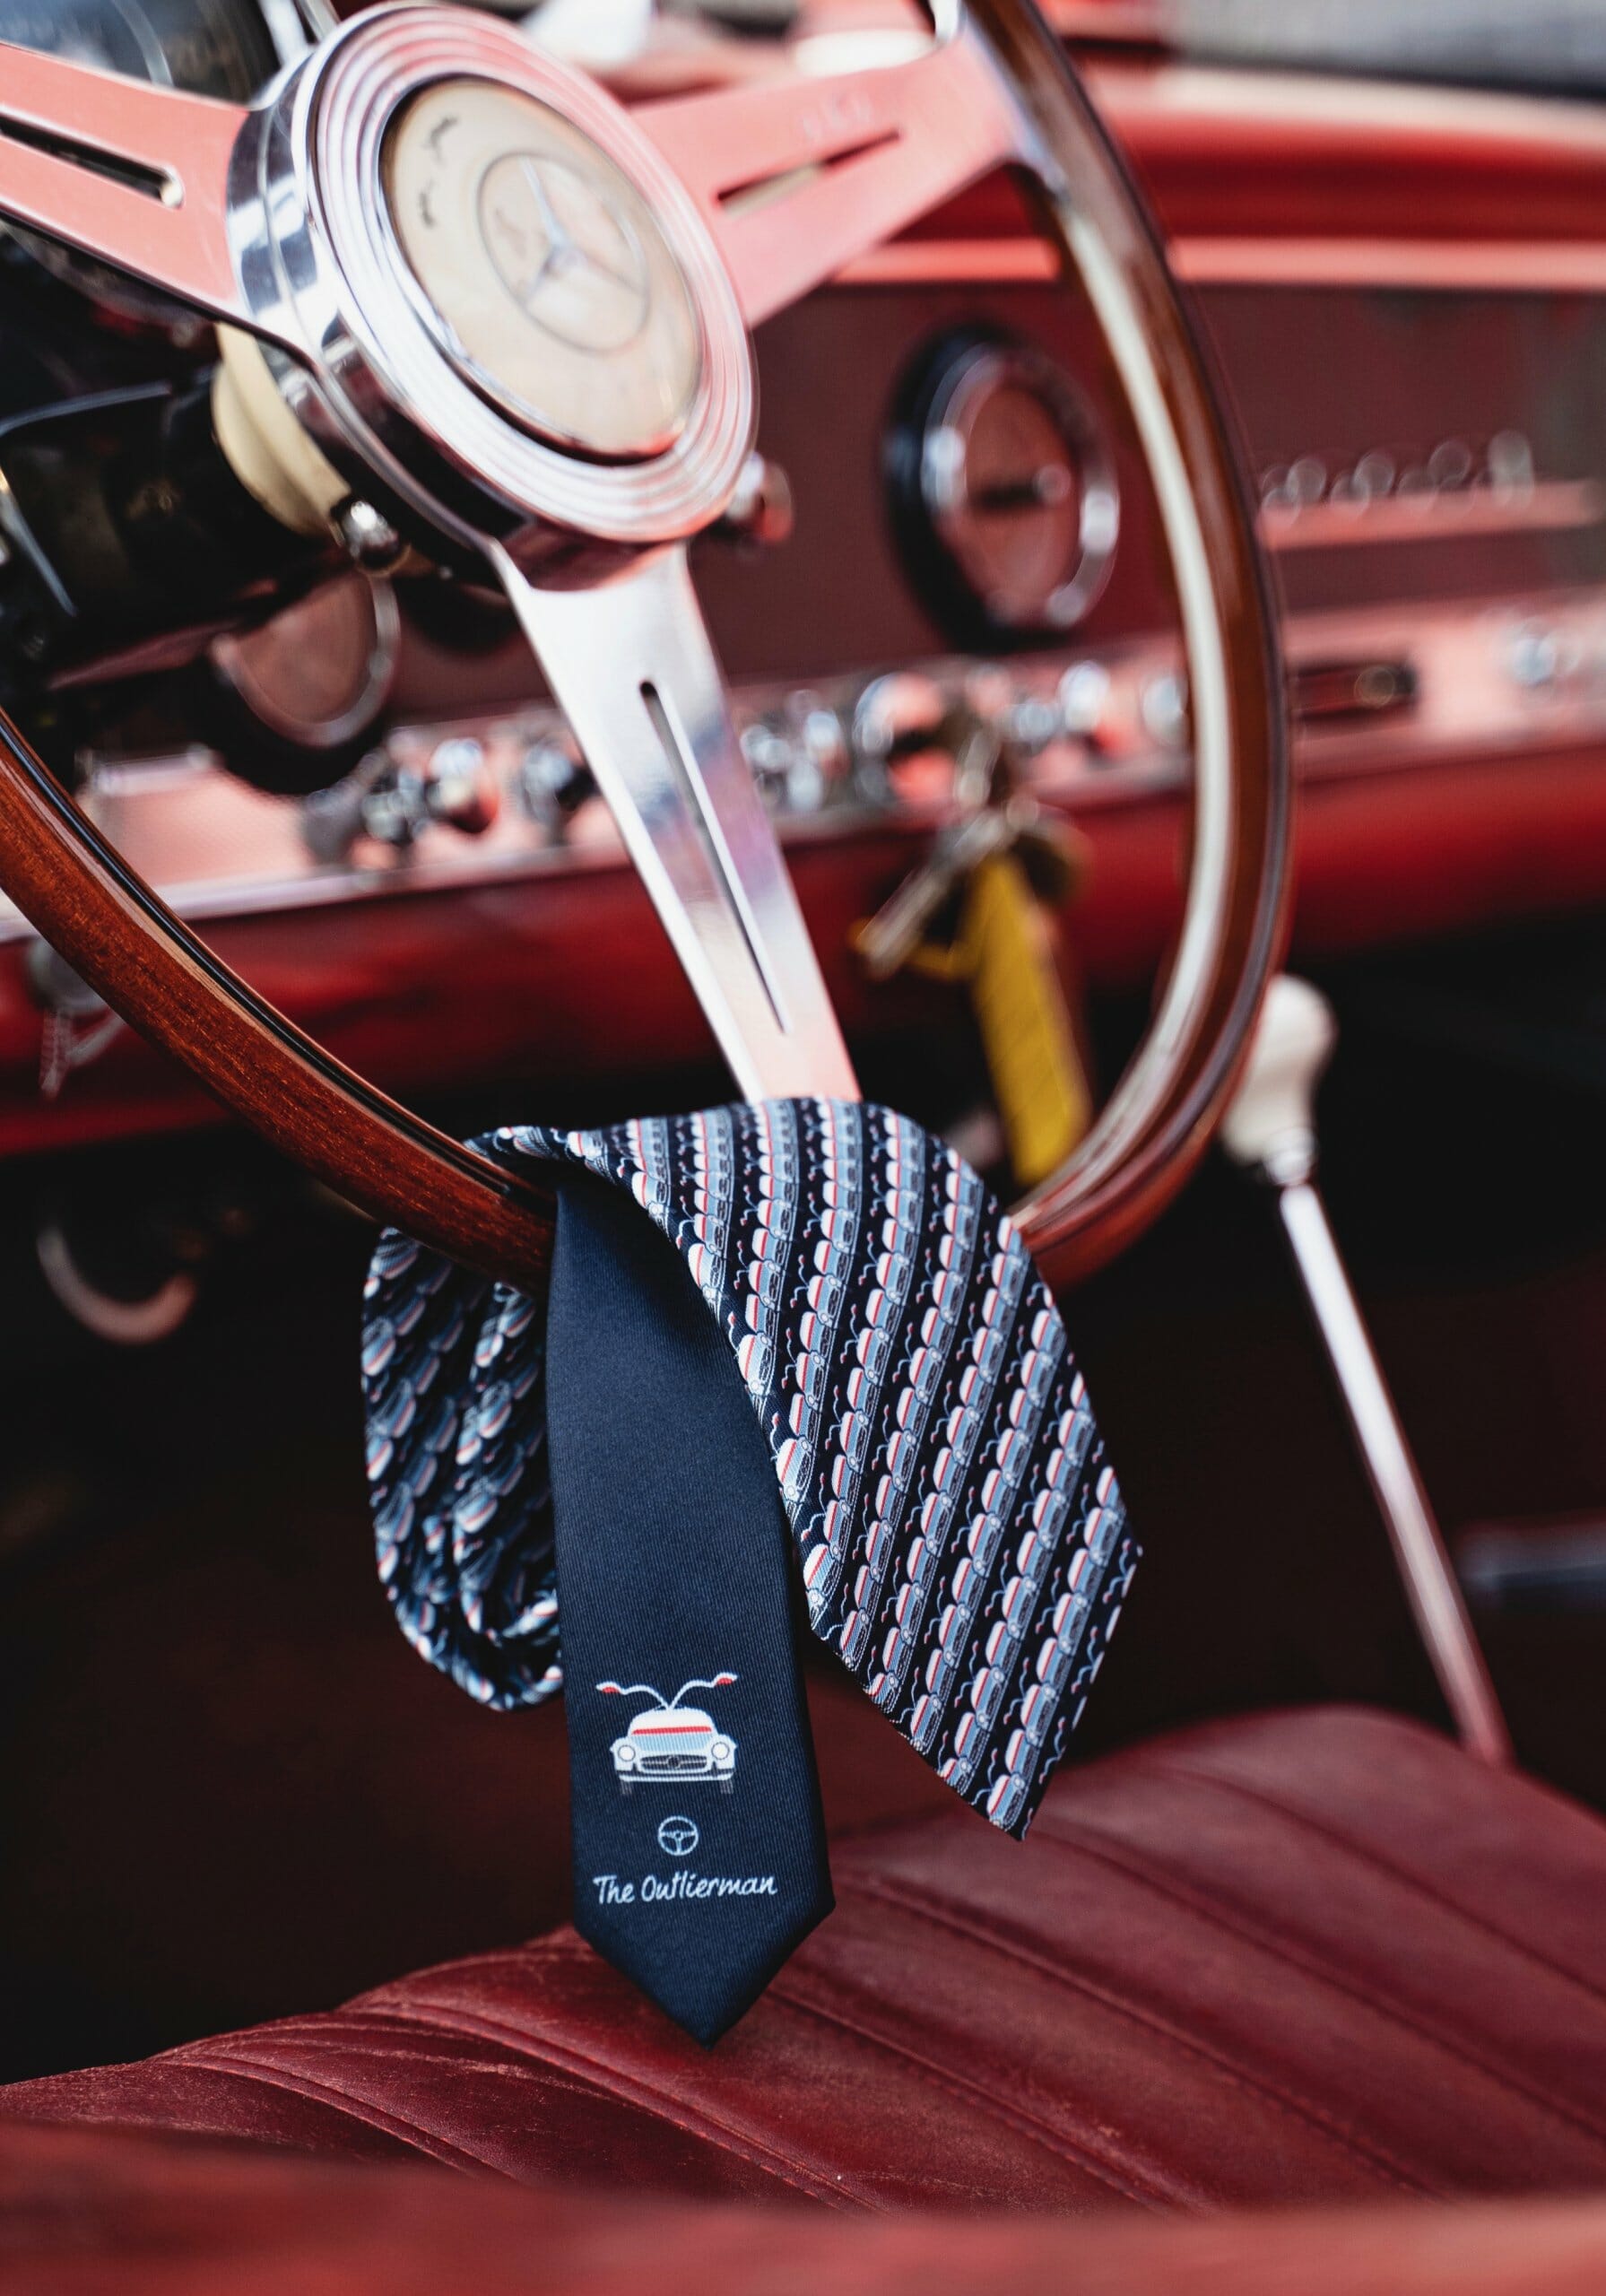 Gullwing, 300SL Gullwing inspires men’s apparel, ClassicCars.com Journal